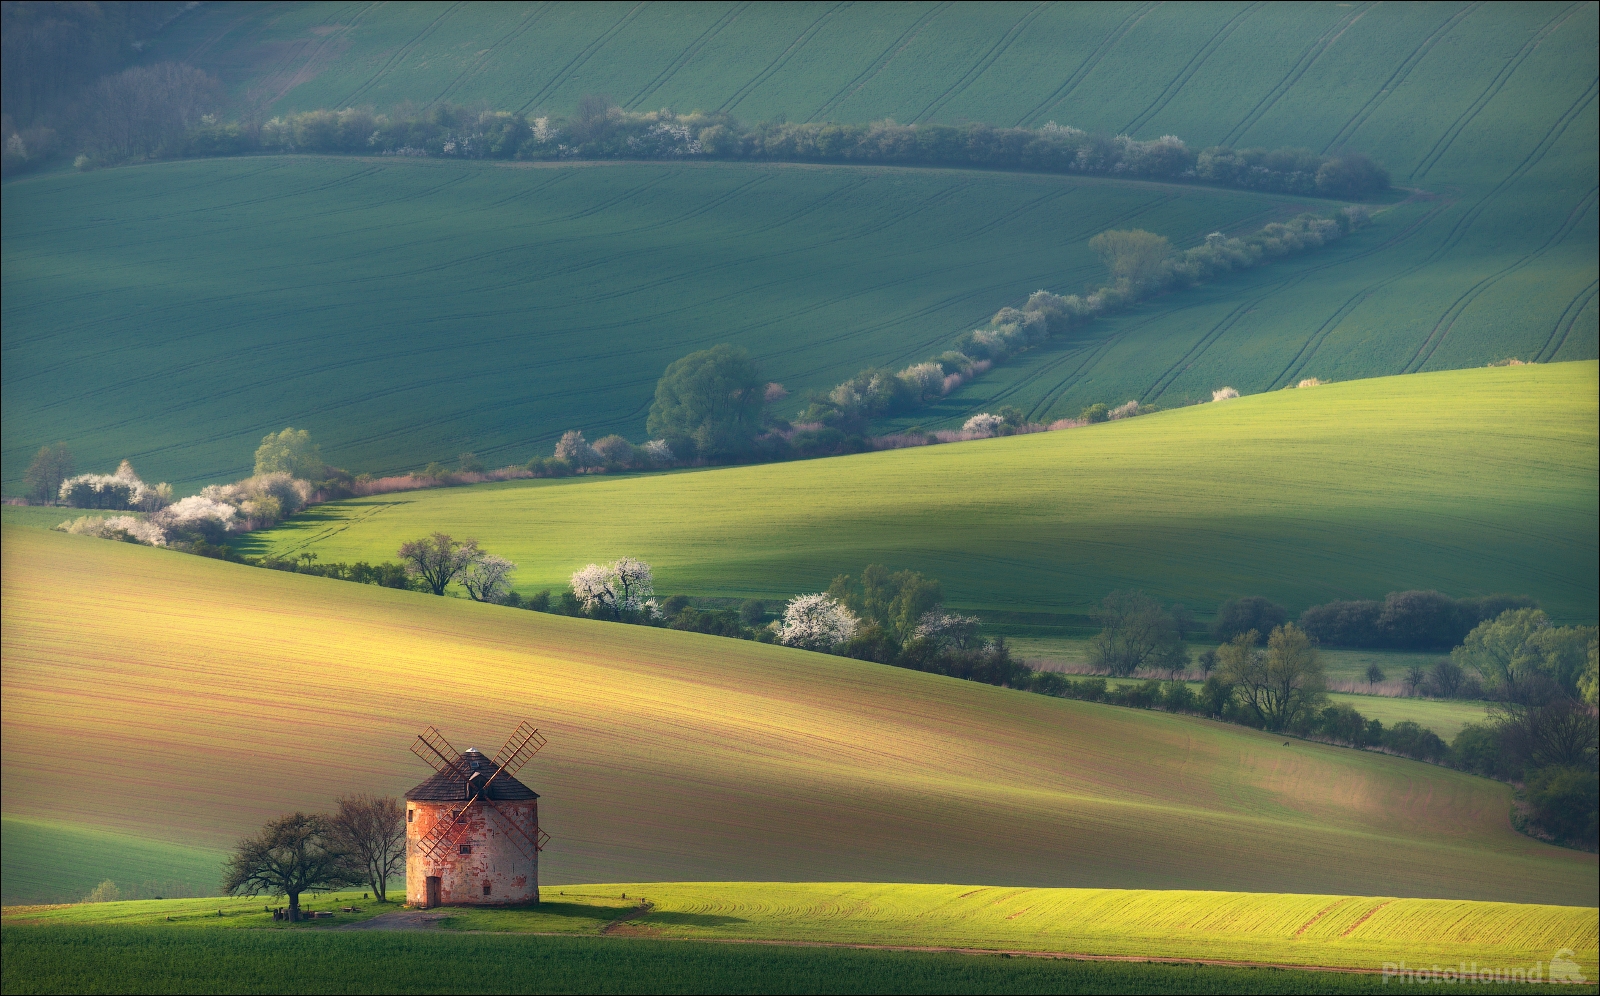 Image of Kunkovice windmill by Vlad Sokolovsky